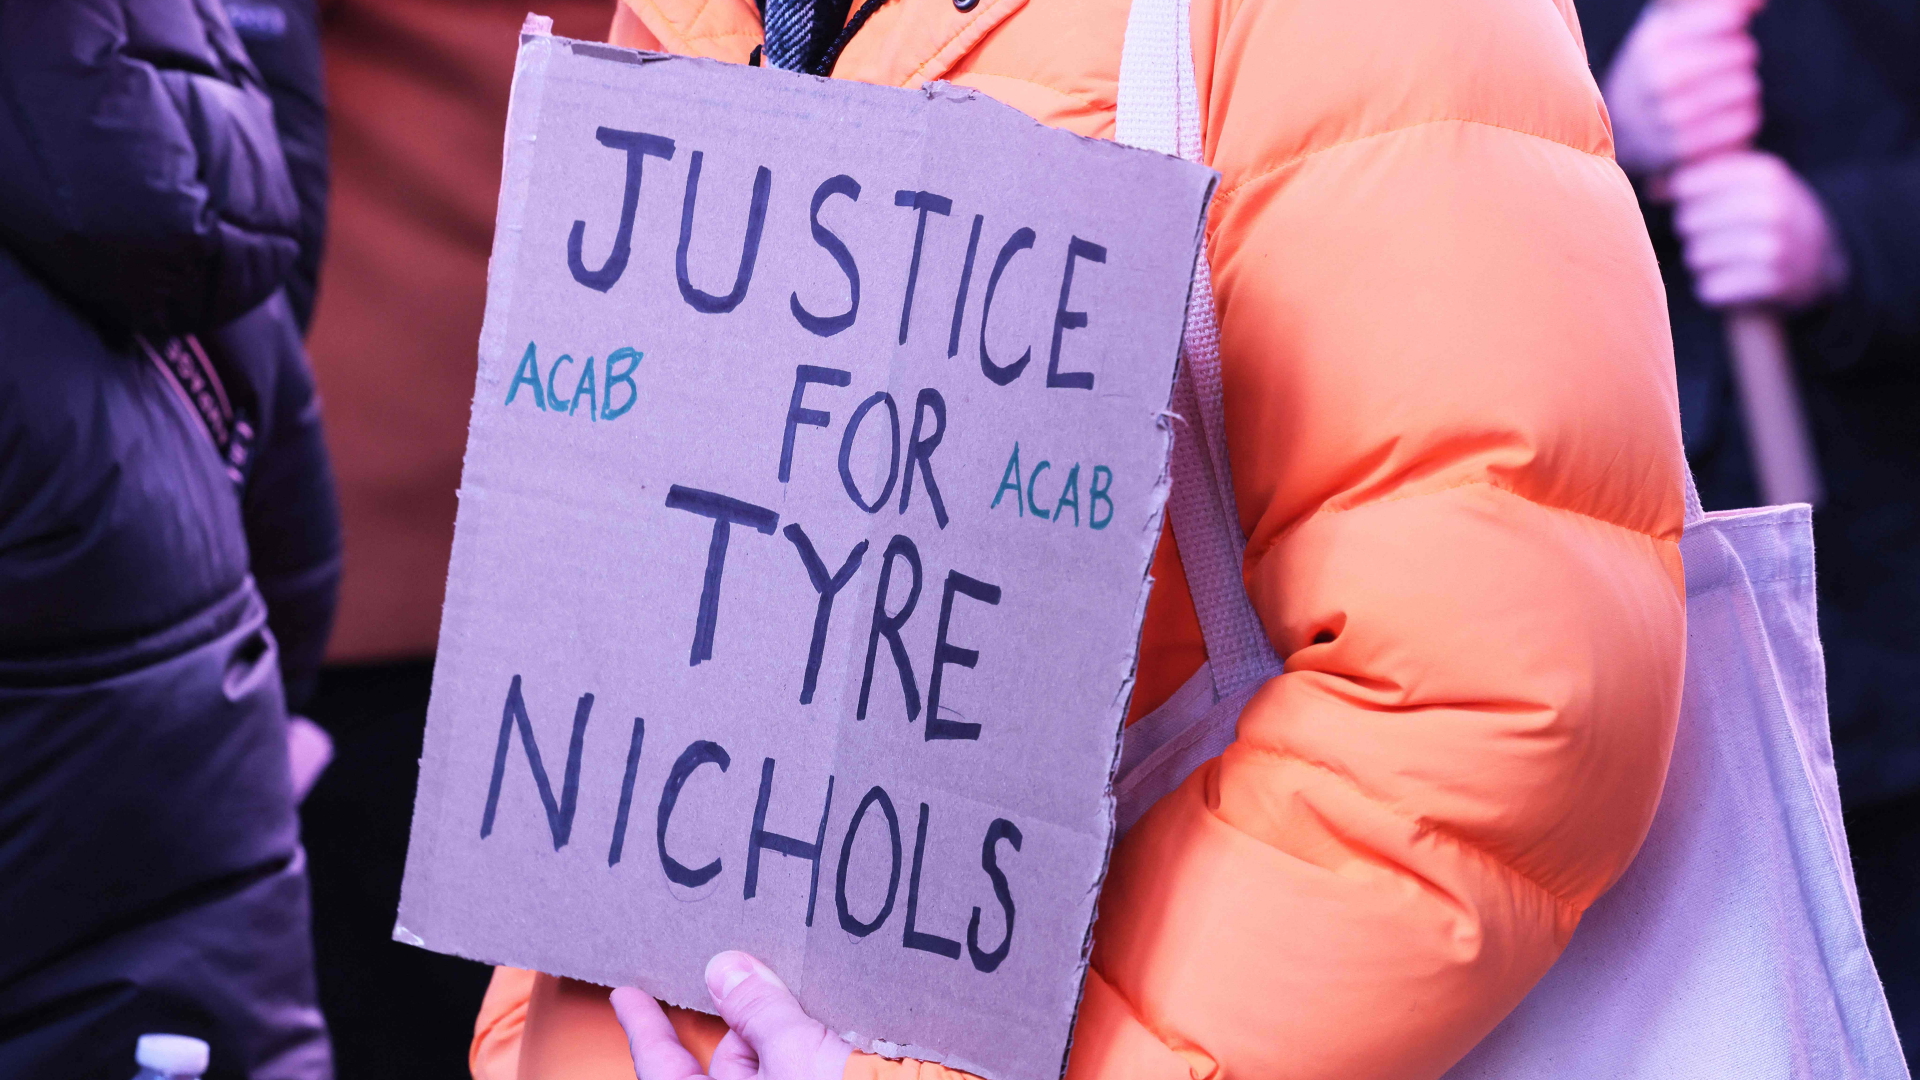 Eine Frau hält ein Plakat mit der Aufschrift "Justice für Tyre Nichols" ("Gerechtigkeit für Tyre Nichols")